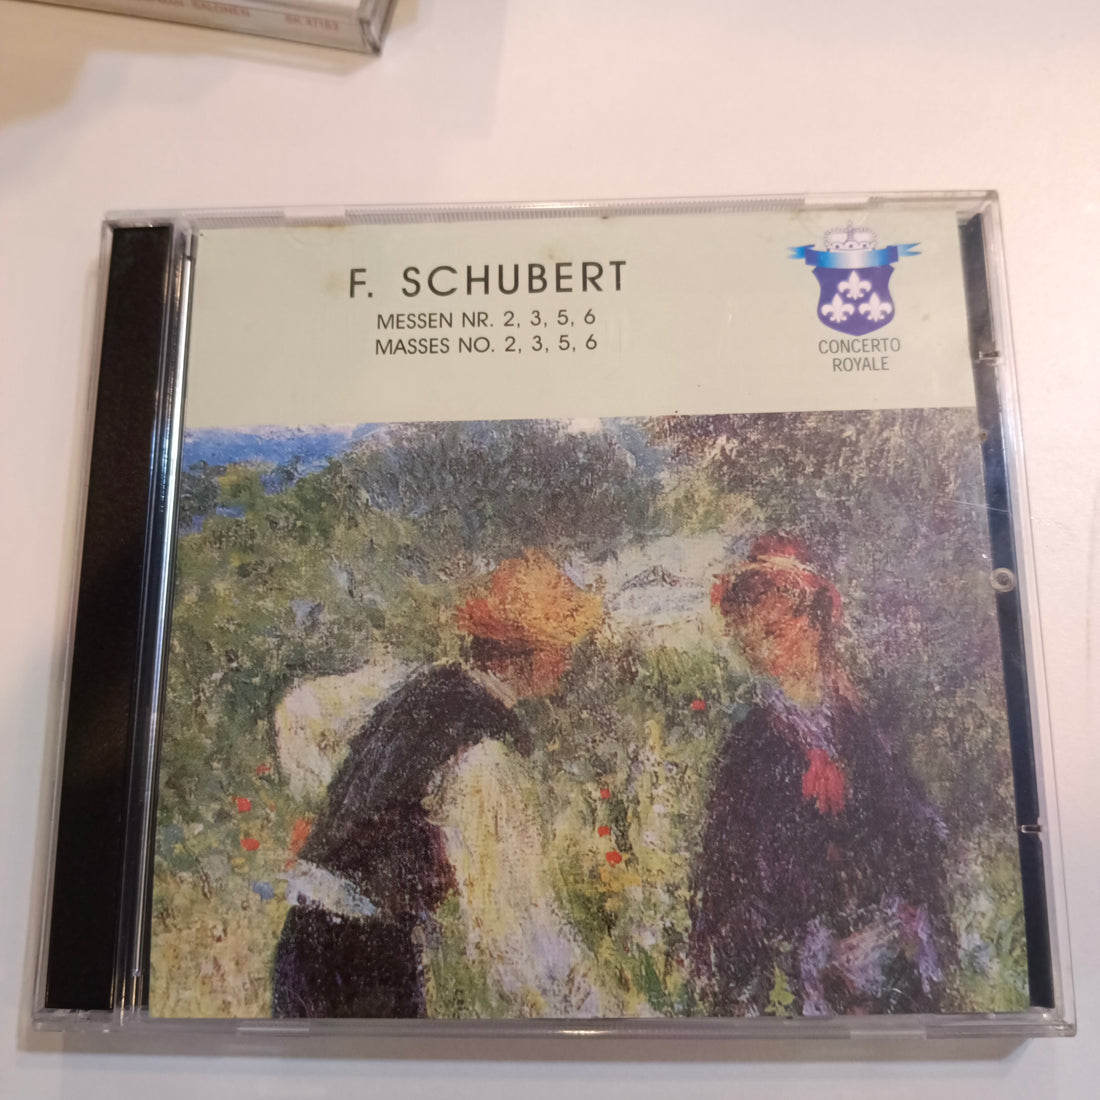 Franz Schubert - Masses No. 2, 3, 5, 6 / Messen Nr. 2, 3, 5, 6 (CD) (VG)